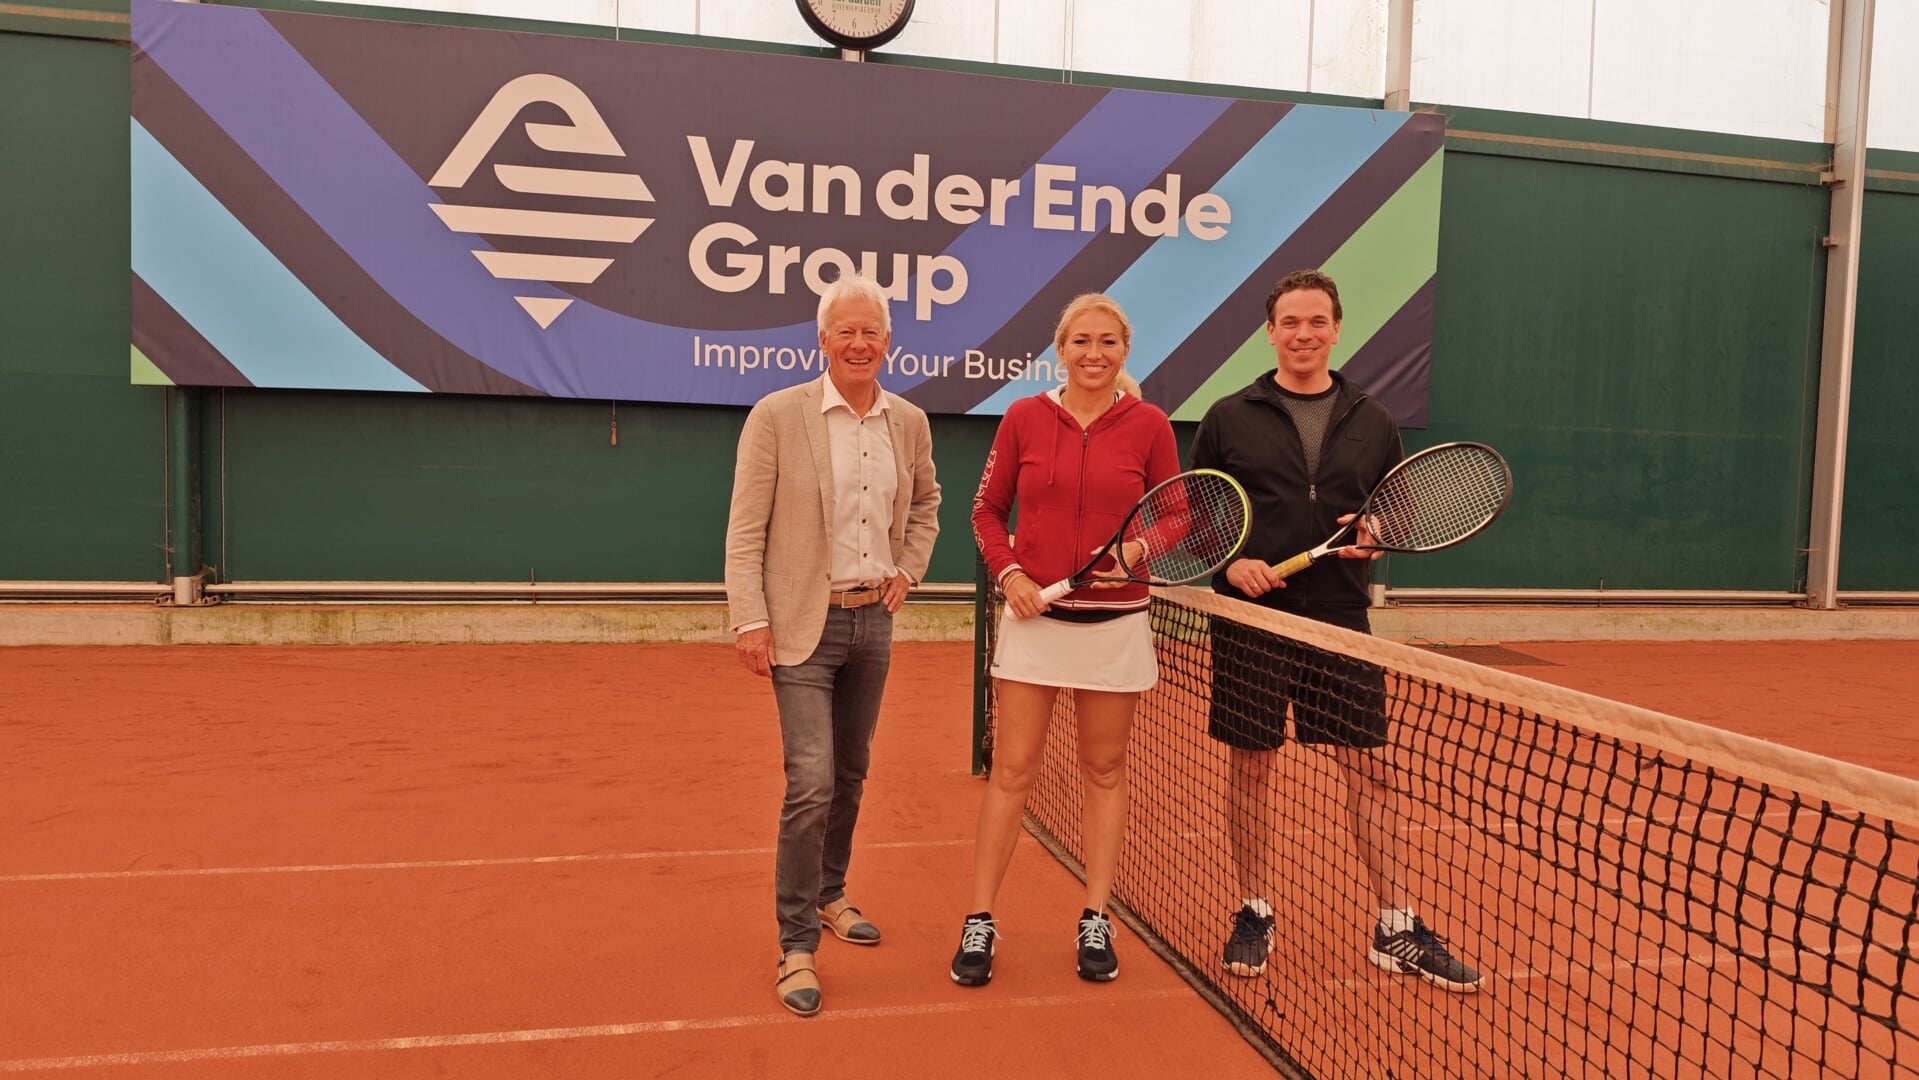 V.l.n.r.: Pieter Eenhoorn (LTC Naaldwijk), Michaëlla Krajicek en Lex van der Ende.